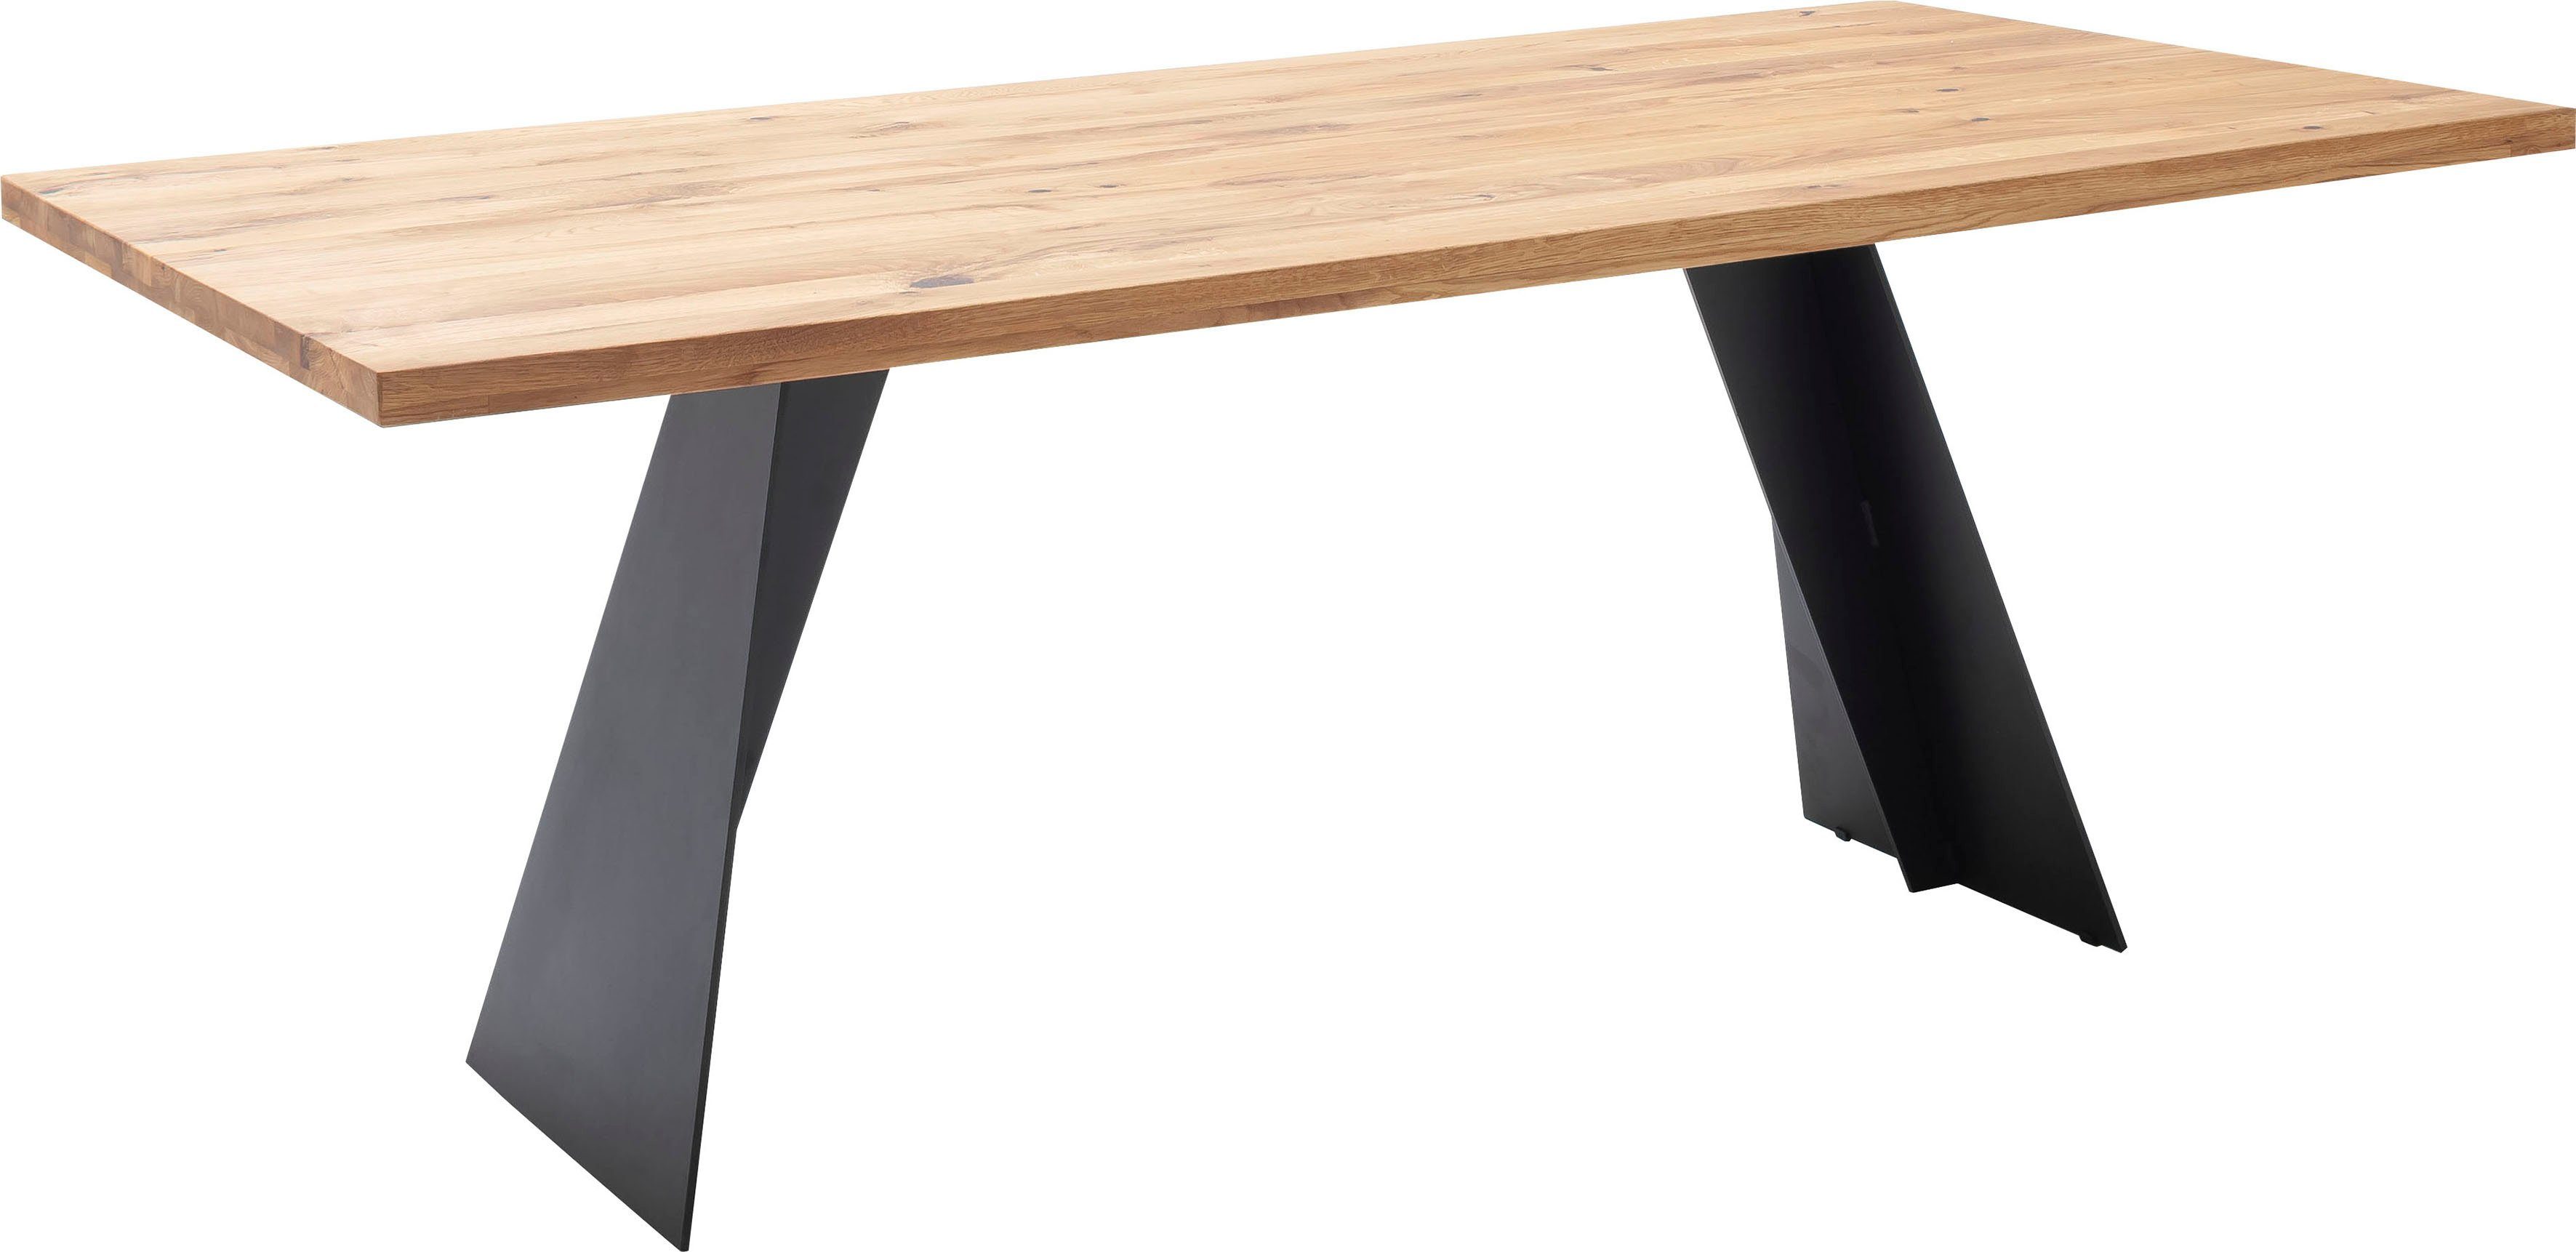 Goa, furniture in FSC-Zertifiziert MCA Tisch, Wildeiche Esstisch Massiv Massivholz Esstisch